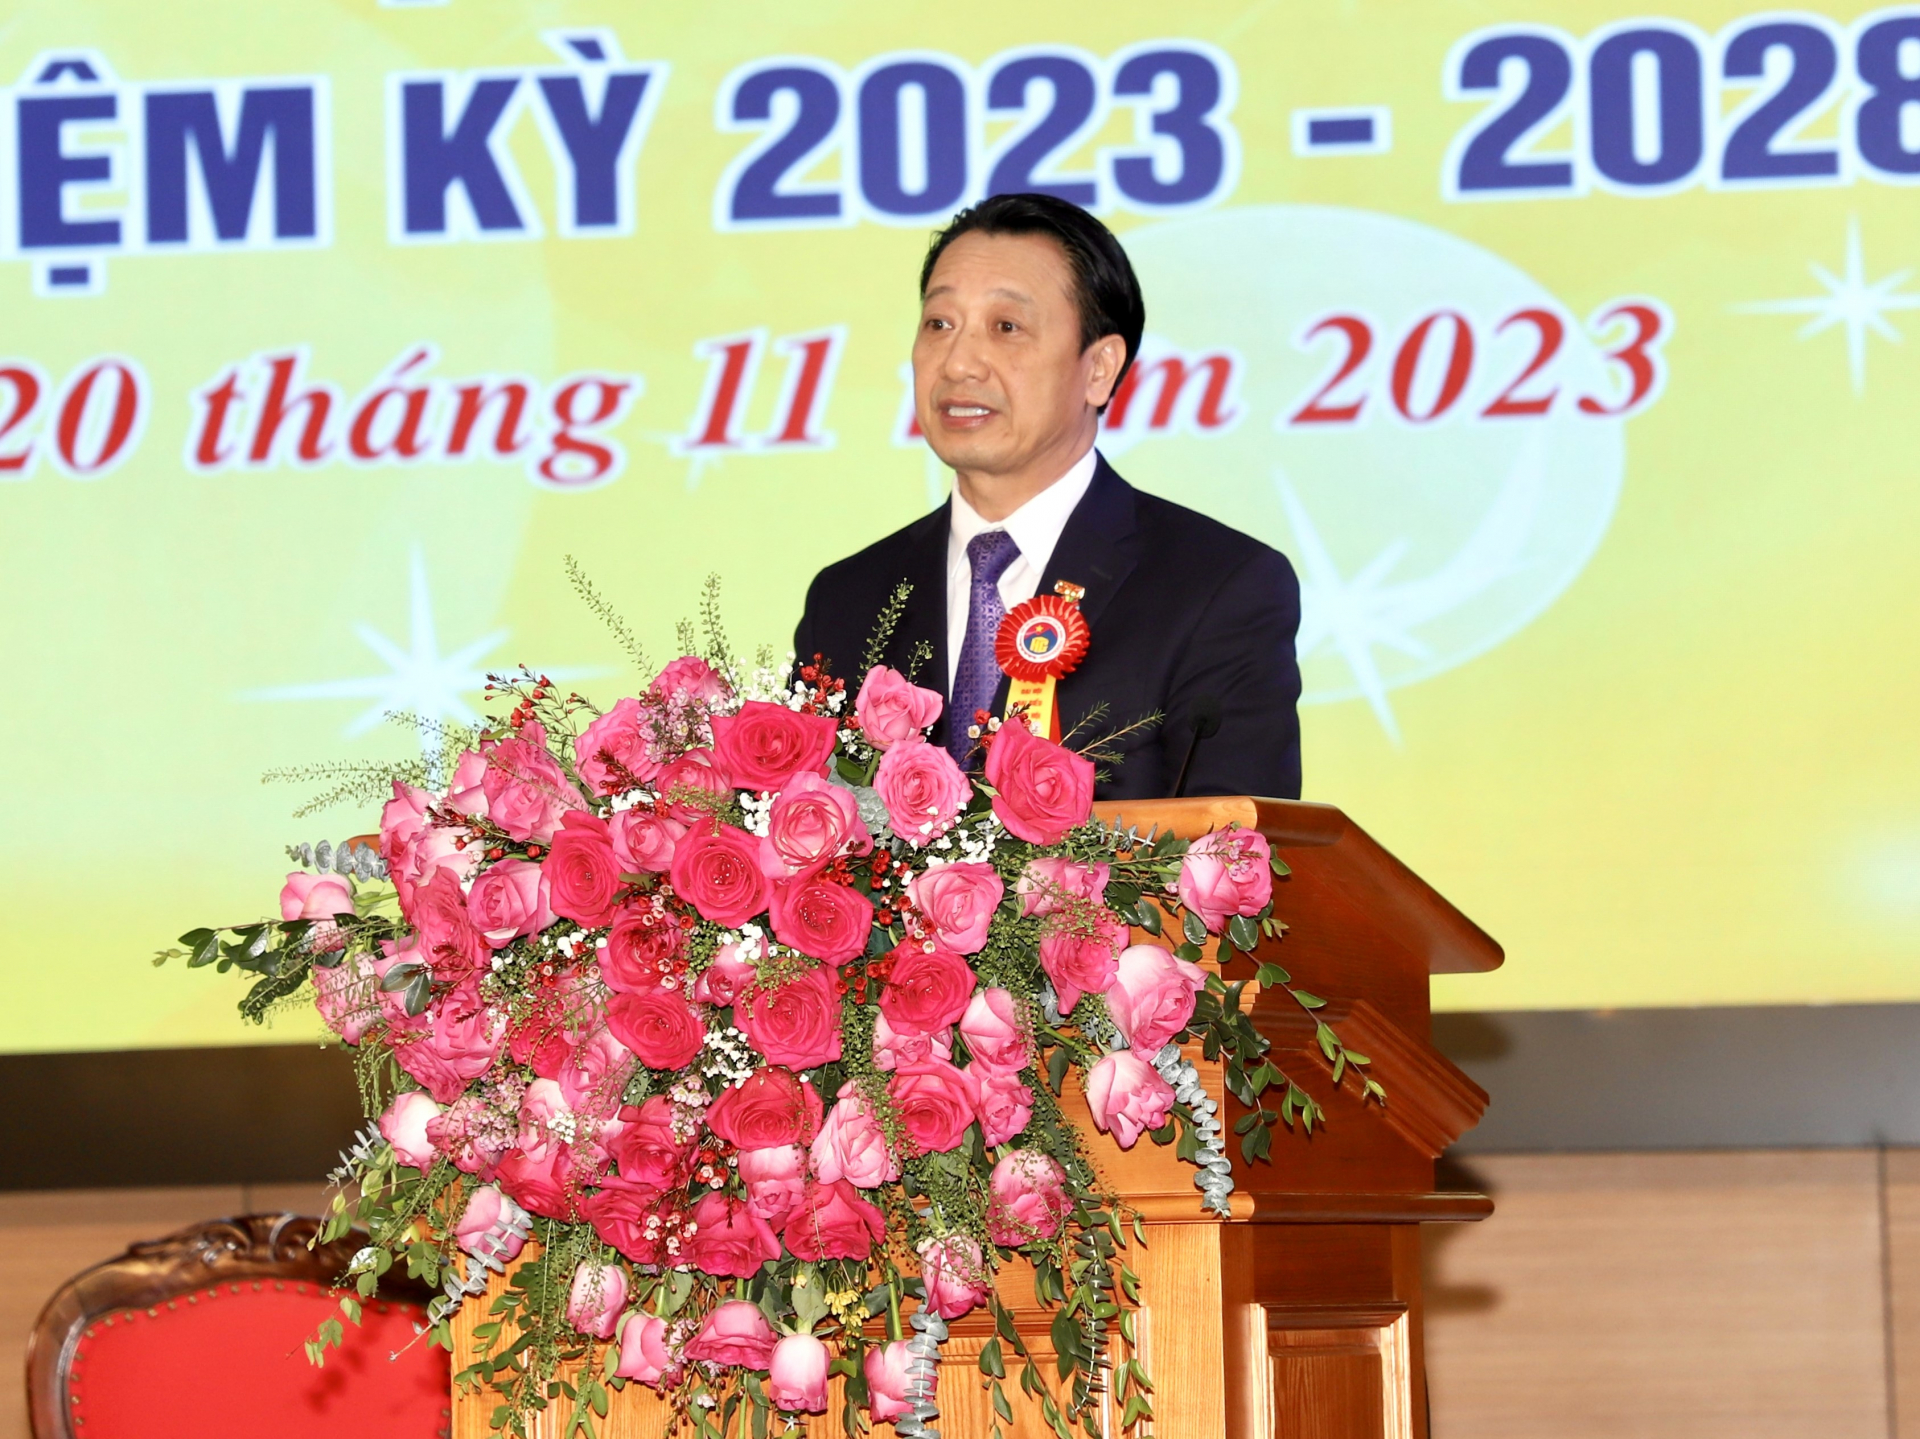 Ông Nguyễn Quang Vinh, Phó Chủ tịch Liên đoàn Thương mại và Công nghiệp Việt Nam phát biểu tại đại hội